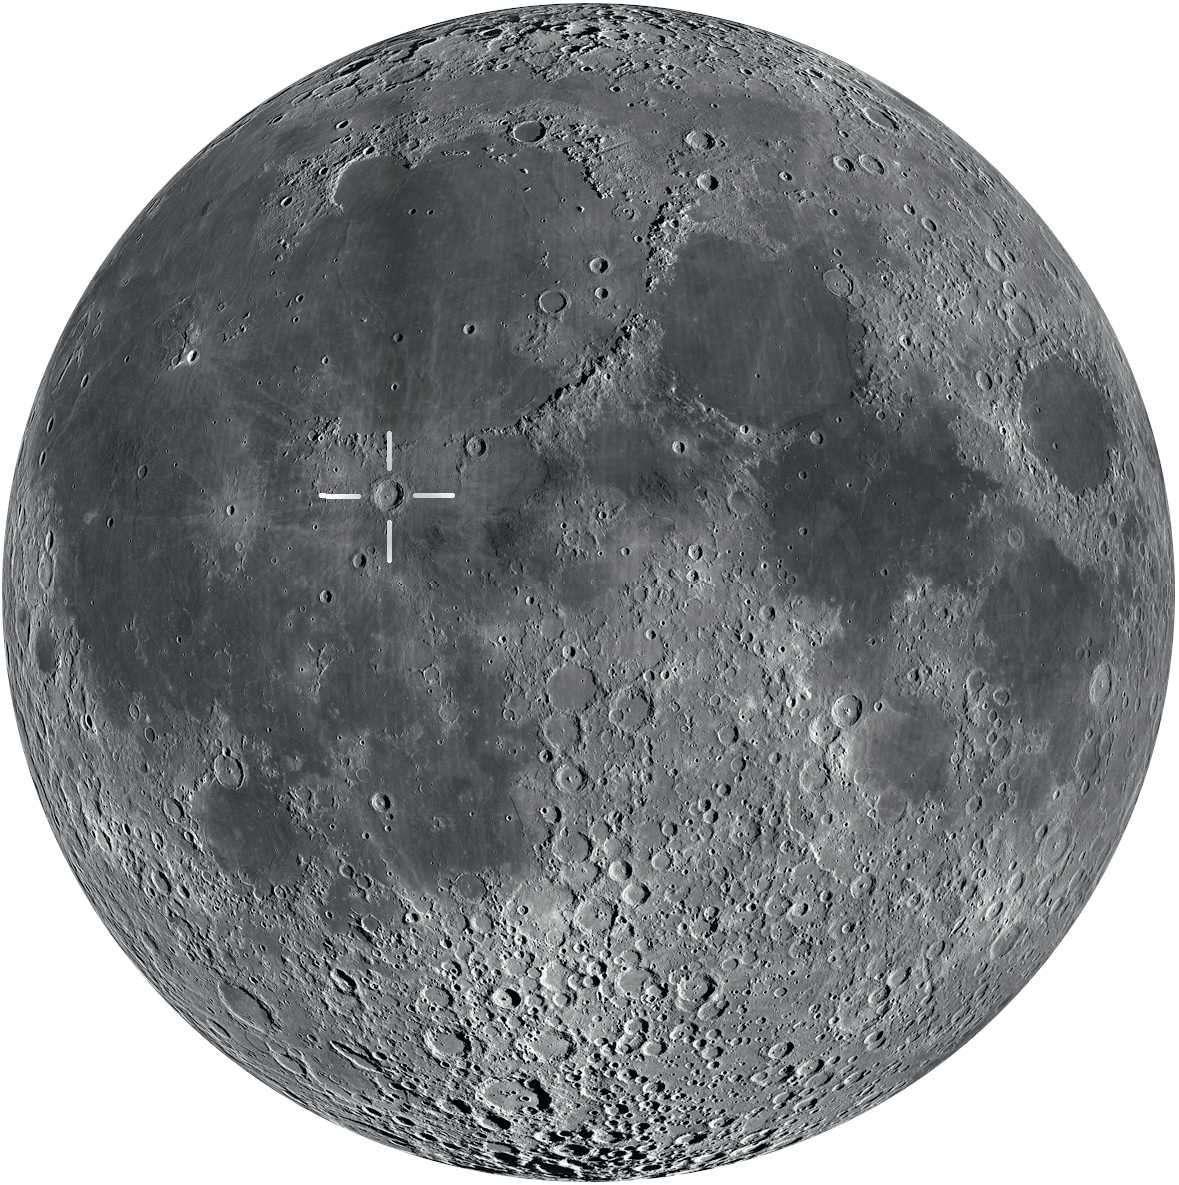 Copernico si trova in prossimità del centro della Luna. Si può osservare al meglio appena dopo il primo quarto e poco prima del plenilunio.